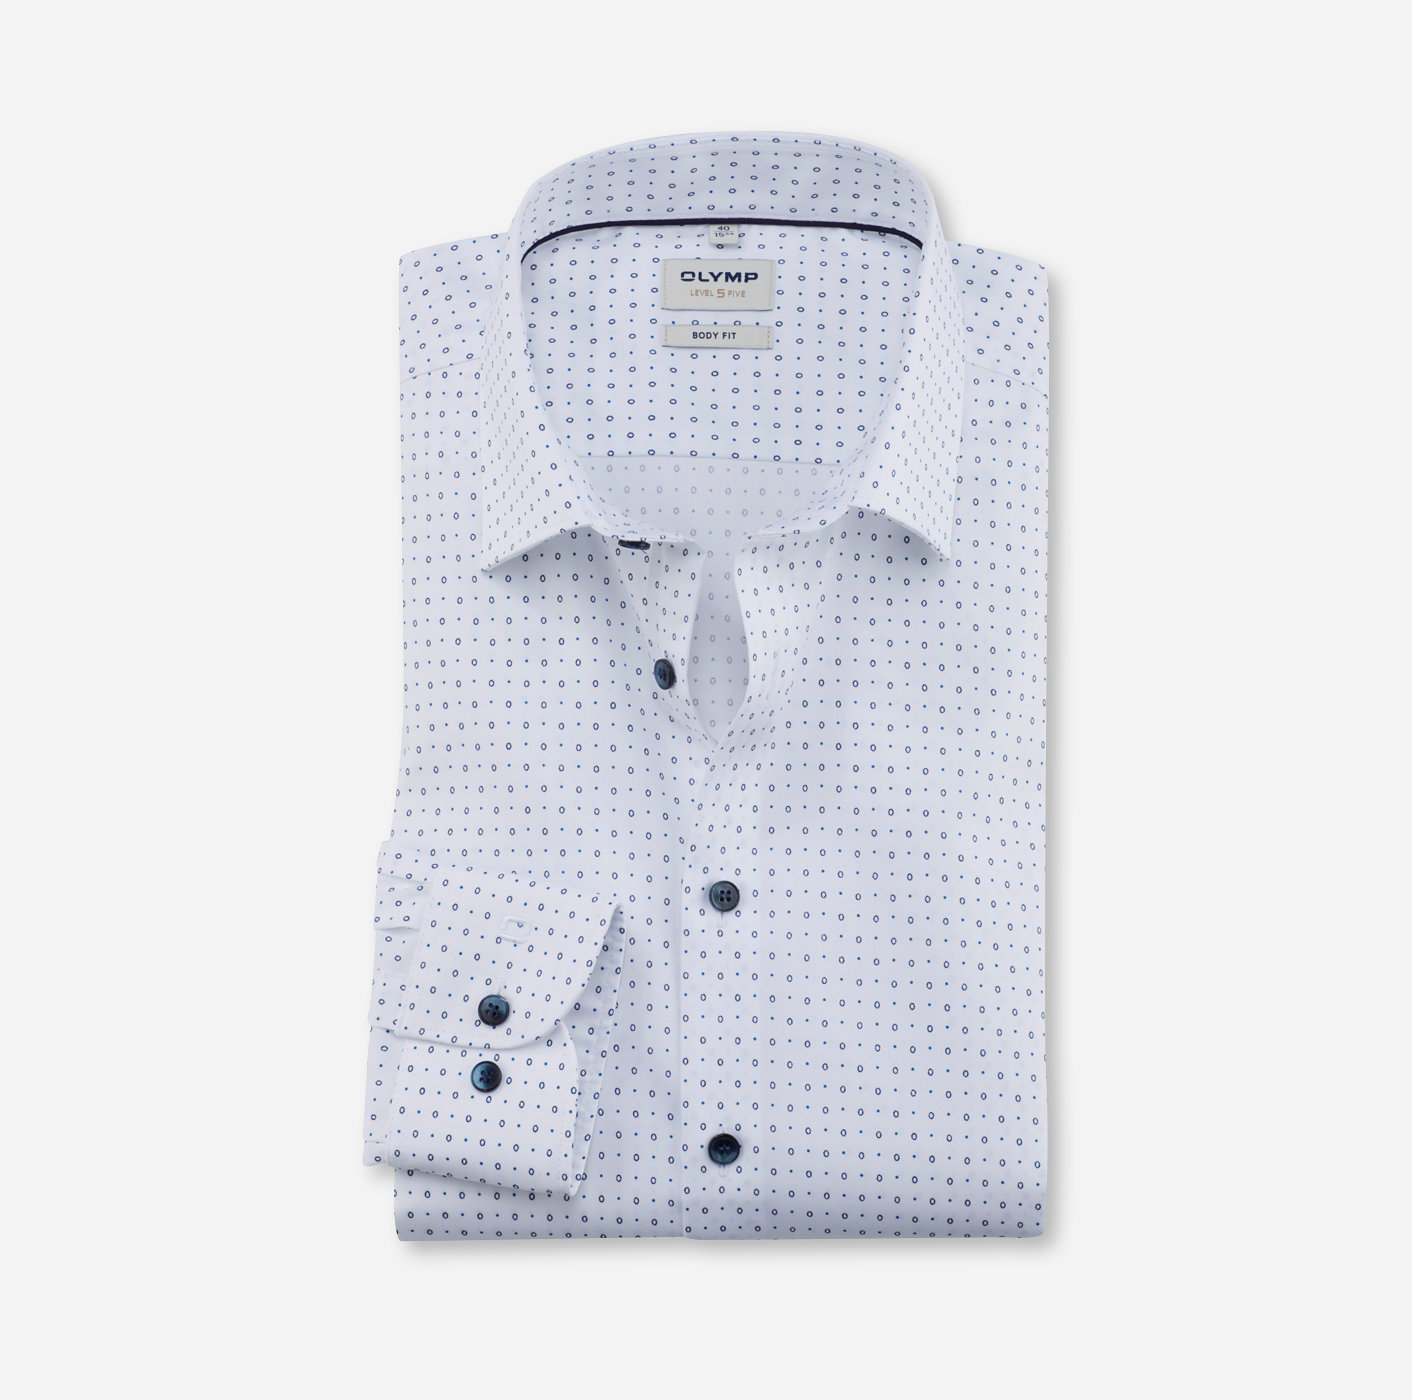 Dockers Camicia sconto 73% MODA UOMO Camicie & T-shirt Regular fit Bianco/Grigio M 